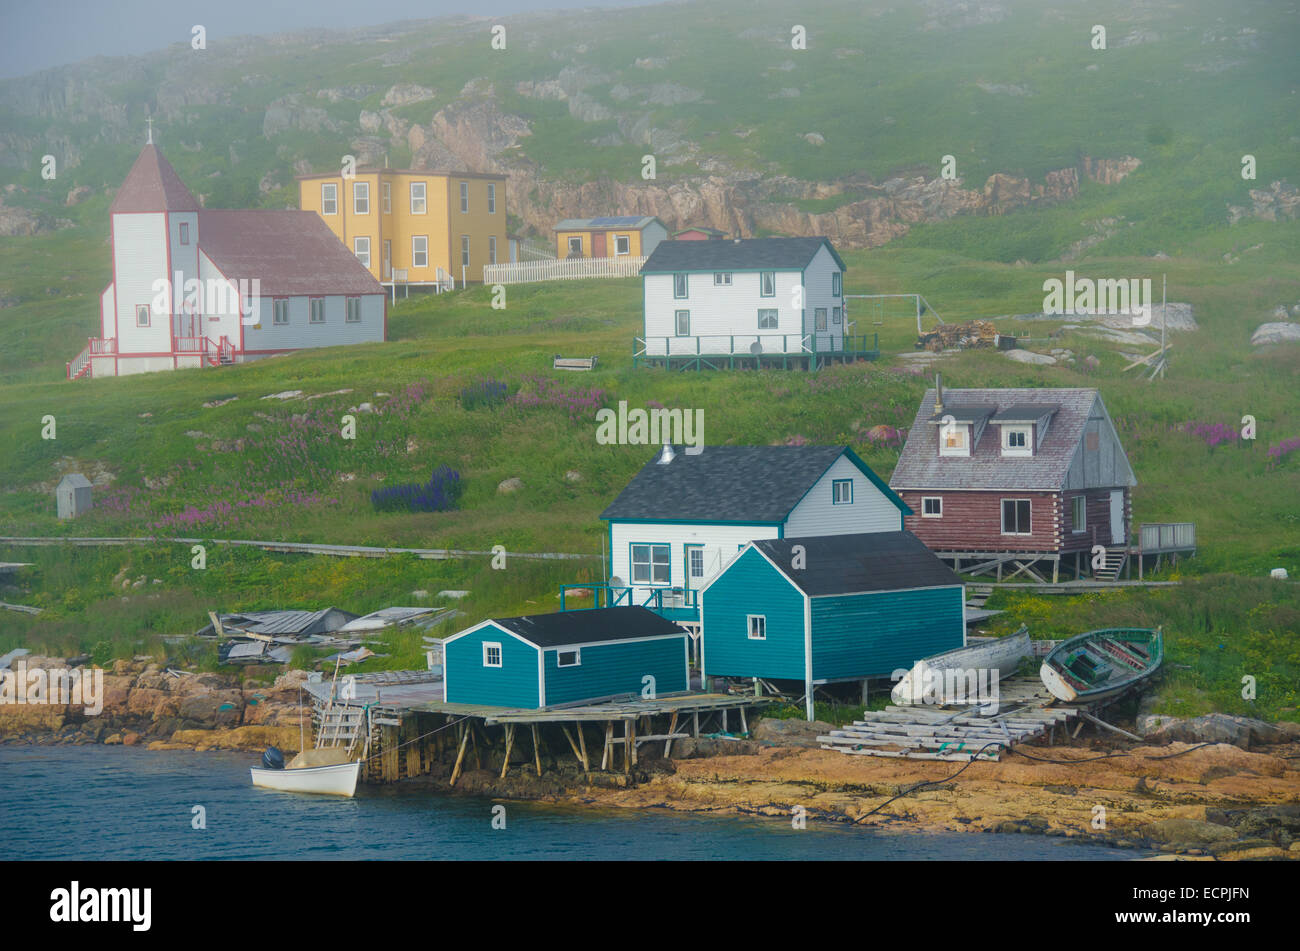 Einmal ist die Hauptstadt des maritimen Labrador, Schlacht Hafen jetzt eine nationale historische Stätte Kanadas und eine Insel in der Zeit eingefroren. Stockfoto